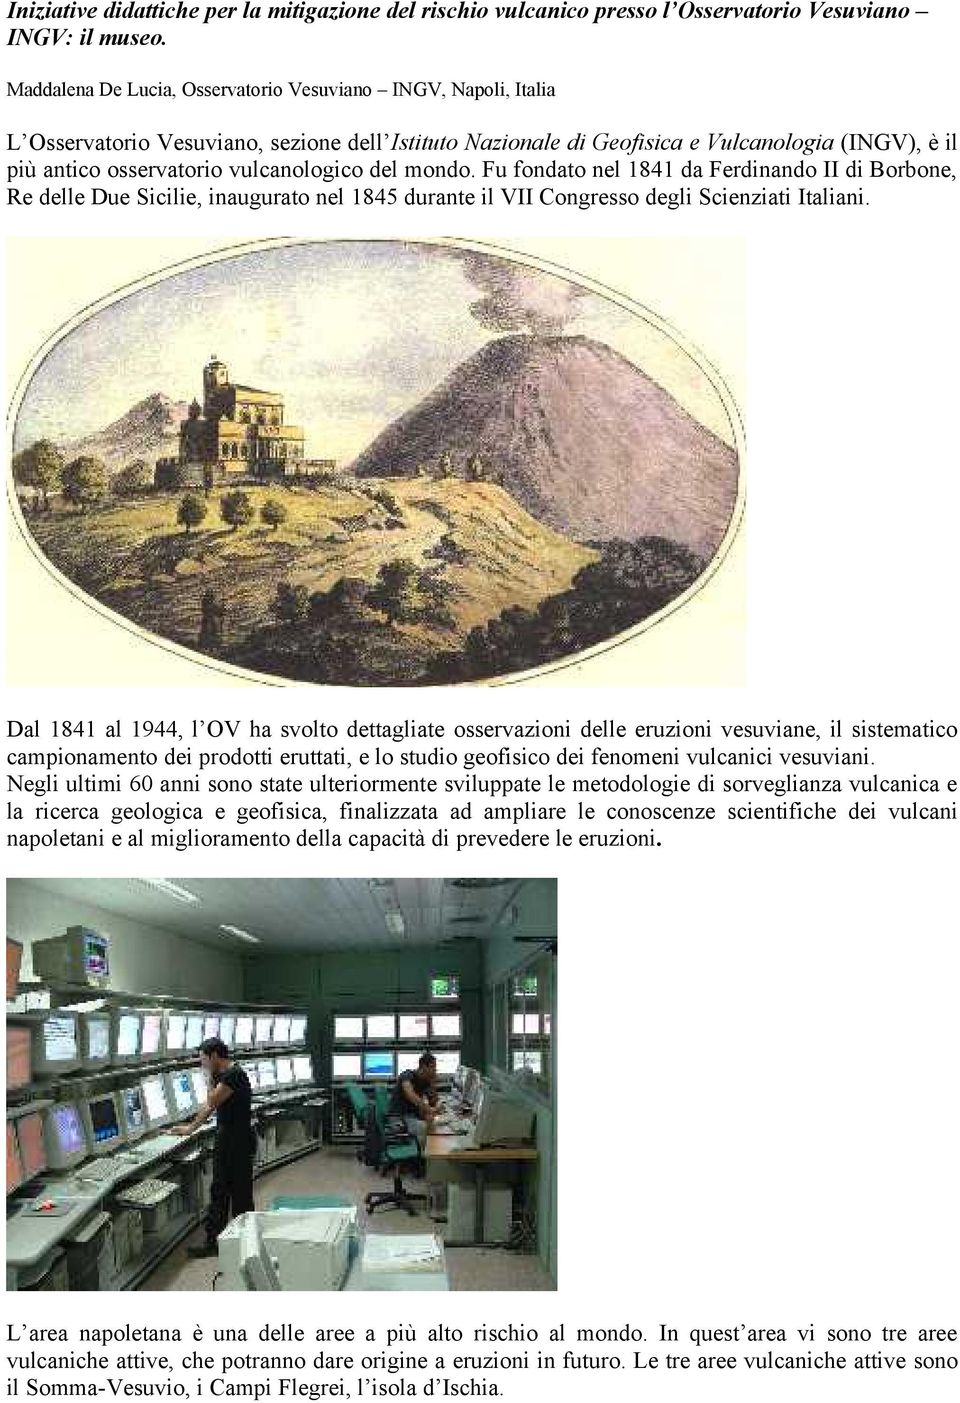 vulcanologico del mondo. Fu fondato nel 1841 da Ferdinando II di Borbone, Re delle Due Sicilie, inaugurato nel 1845 durante il VII Congresso degli Scienziati Italiani.